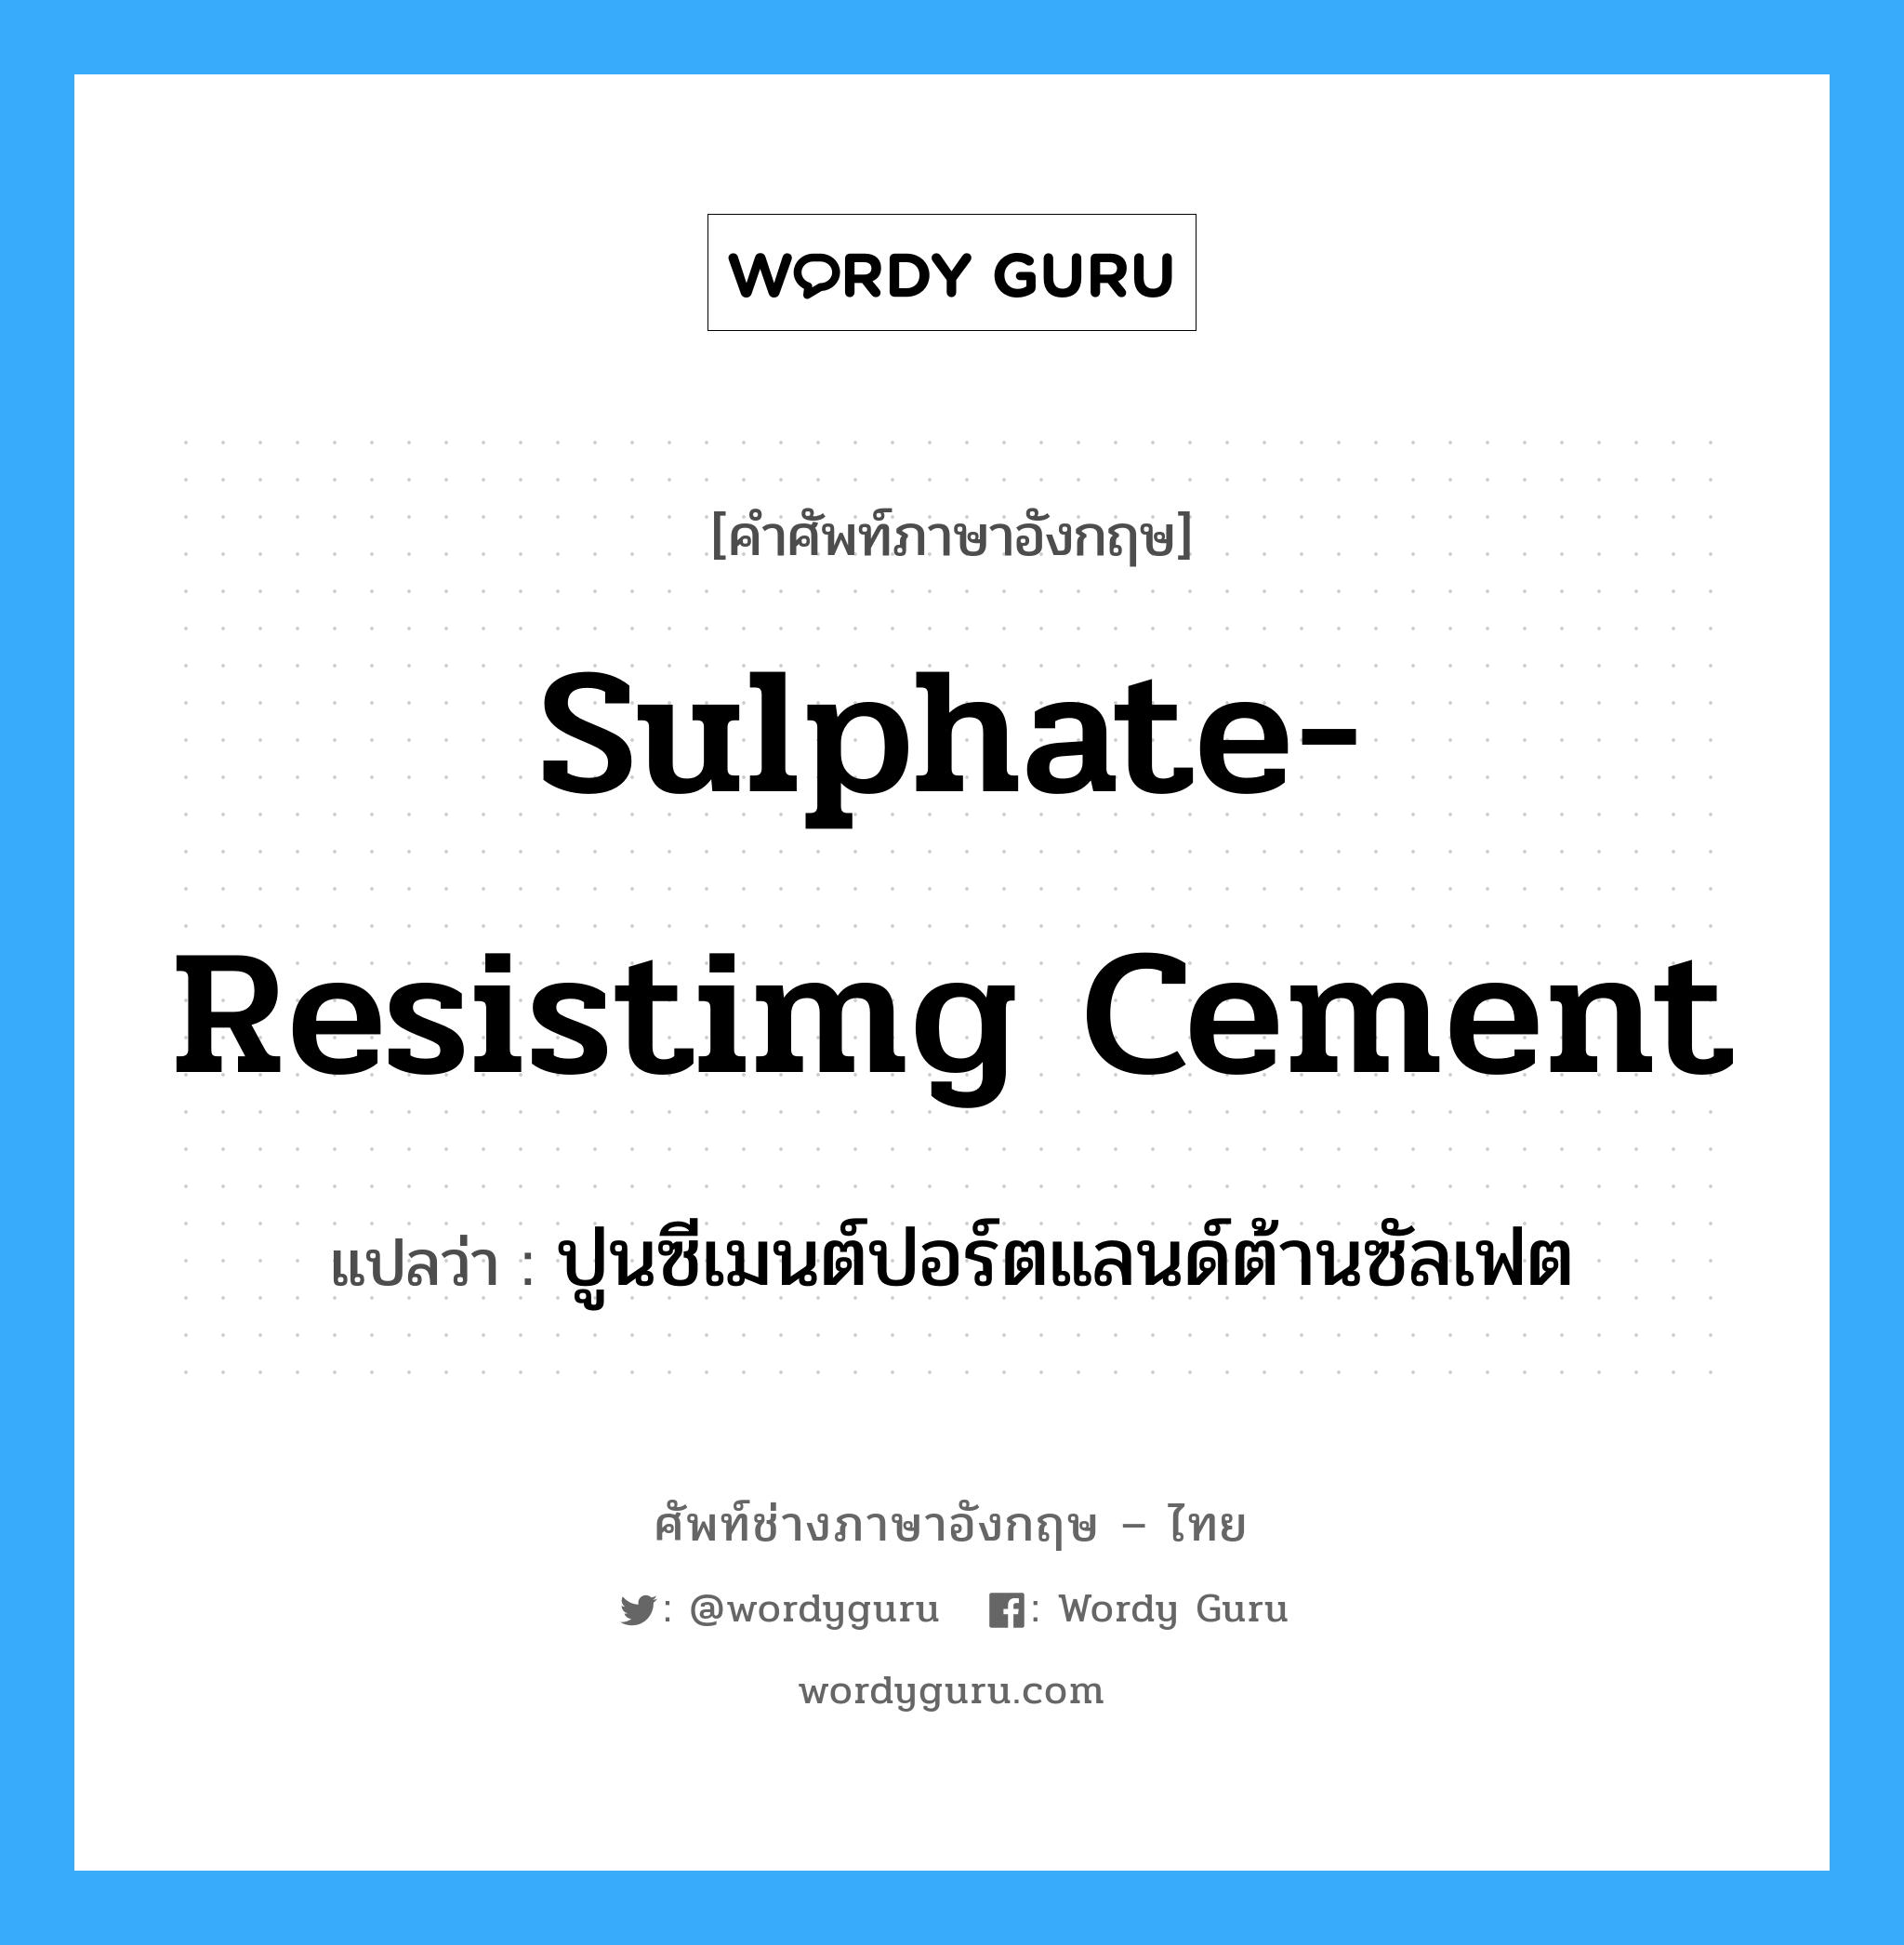 sulphate-resistimg cement แปลว่า?, คำศัพท์ช่างภาษาอังกฤษ - ไทย sulphate-resistimg cement คำศัพท์ภาษาอังกฤษ sulphate-resistimg cement แปลว่า ปูนซีเมนต์ปอร์ตแลนด์ต้านซัลเฟต